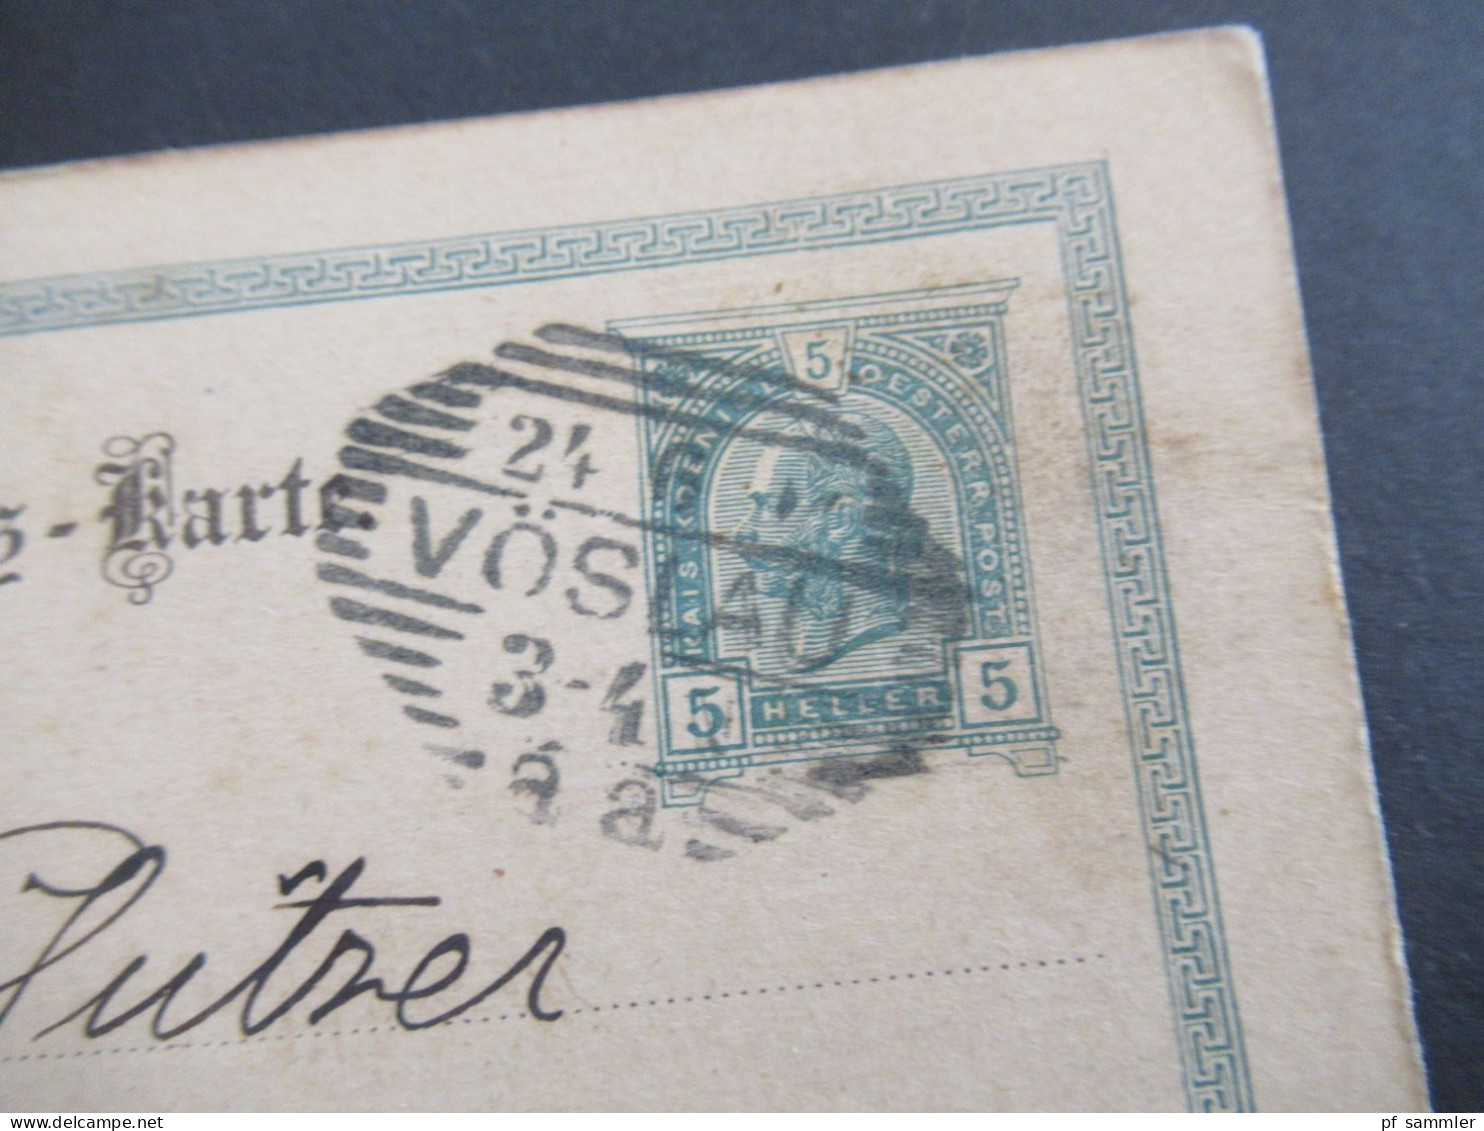 Österreich 1901 GA 5 Heller Strichstempel Vöslau Nach Billwerder Bergedorf Mit Ank. Gitterstempel Bergedorf - Cartes Postales